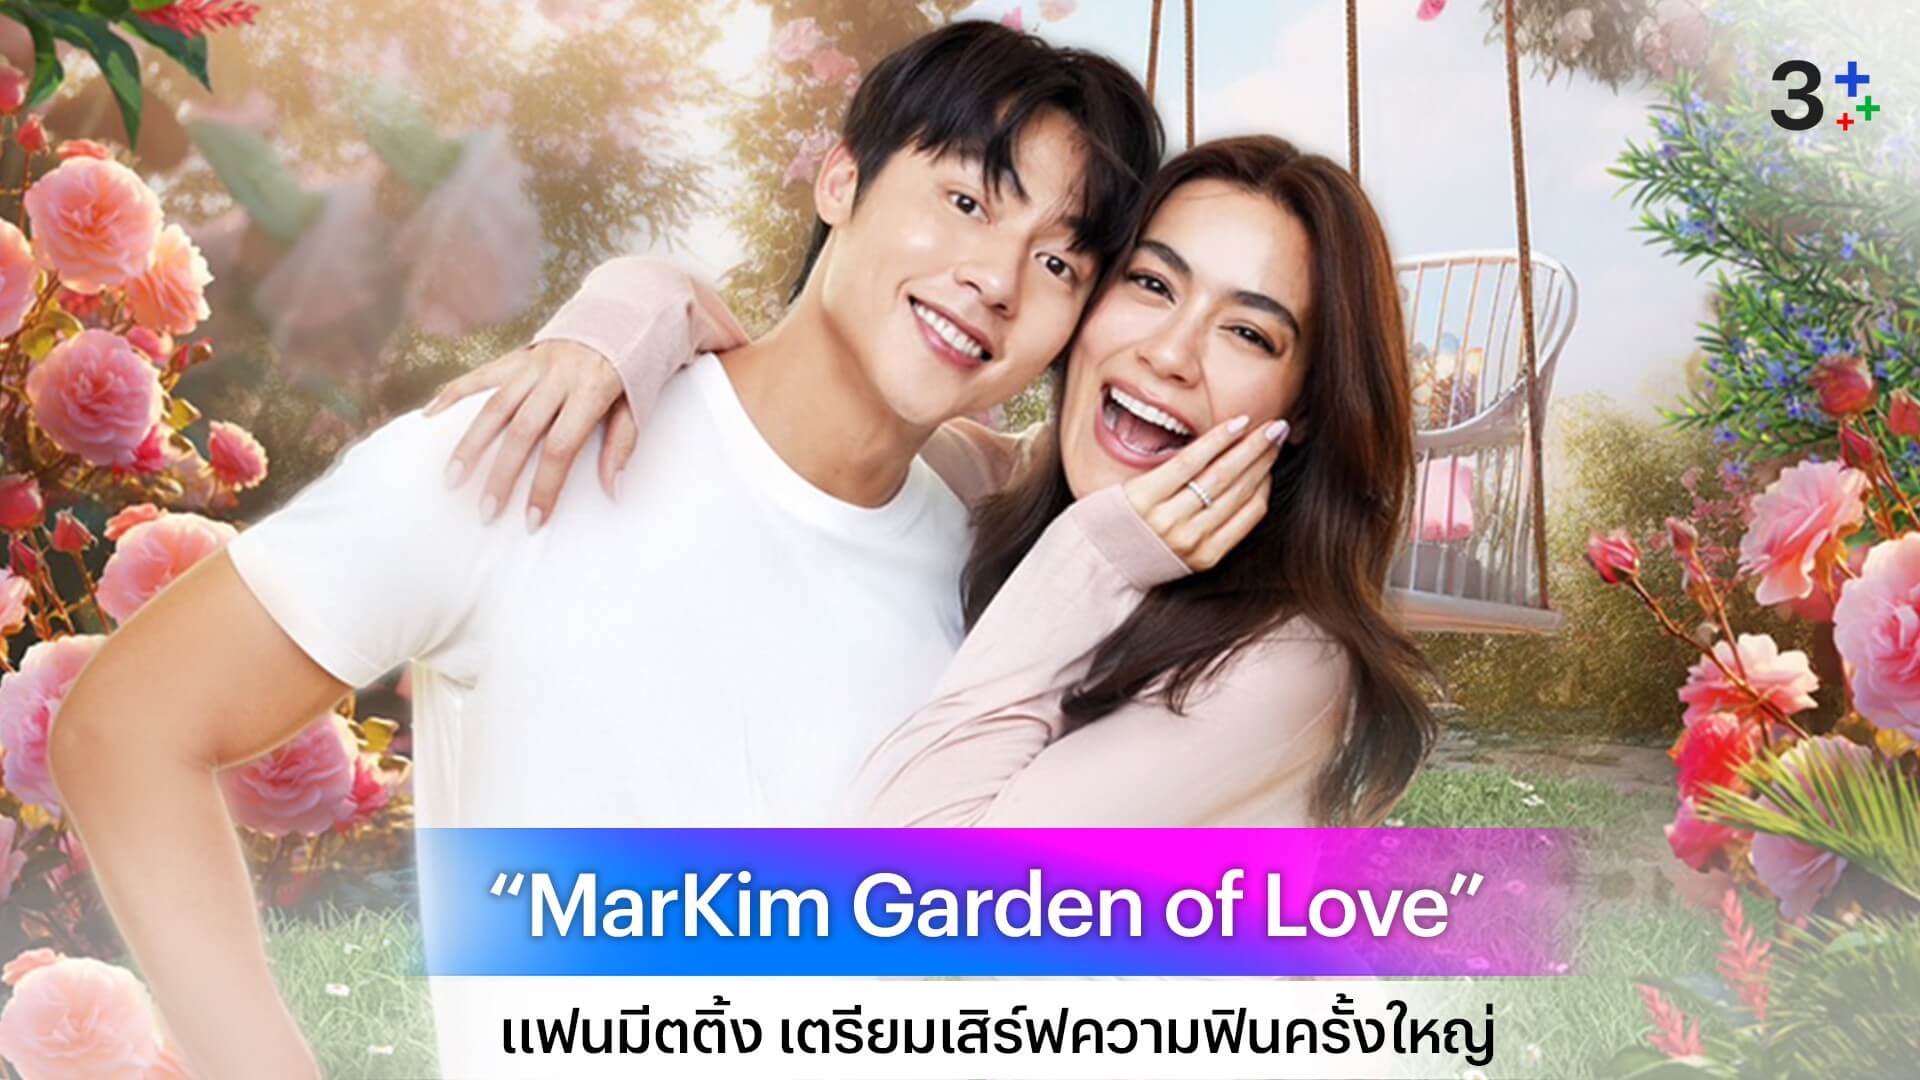 “หมาก-คิม” เตรียมเสิร์ฟความฟินครั้งใหญ่ในงานแฟนมีต “MarKim Garden of Love” 14 กรกฎาคม นี้